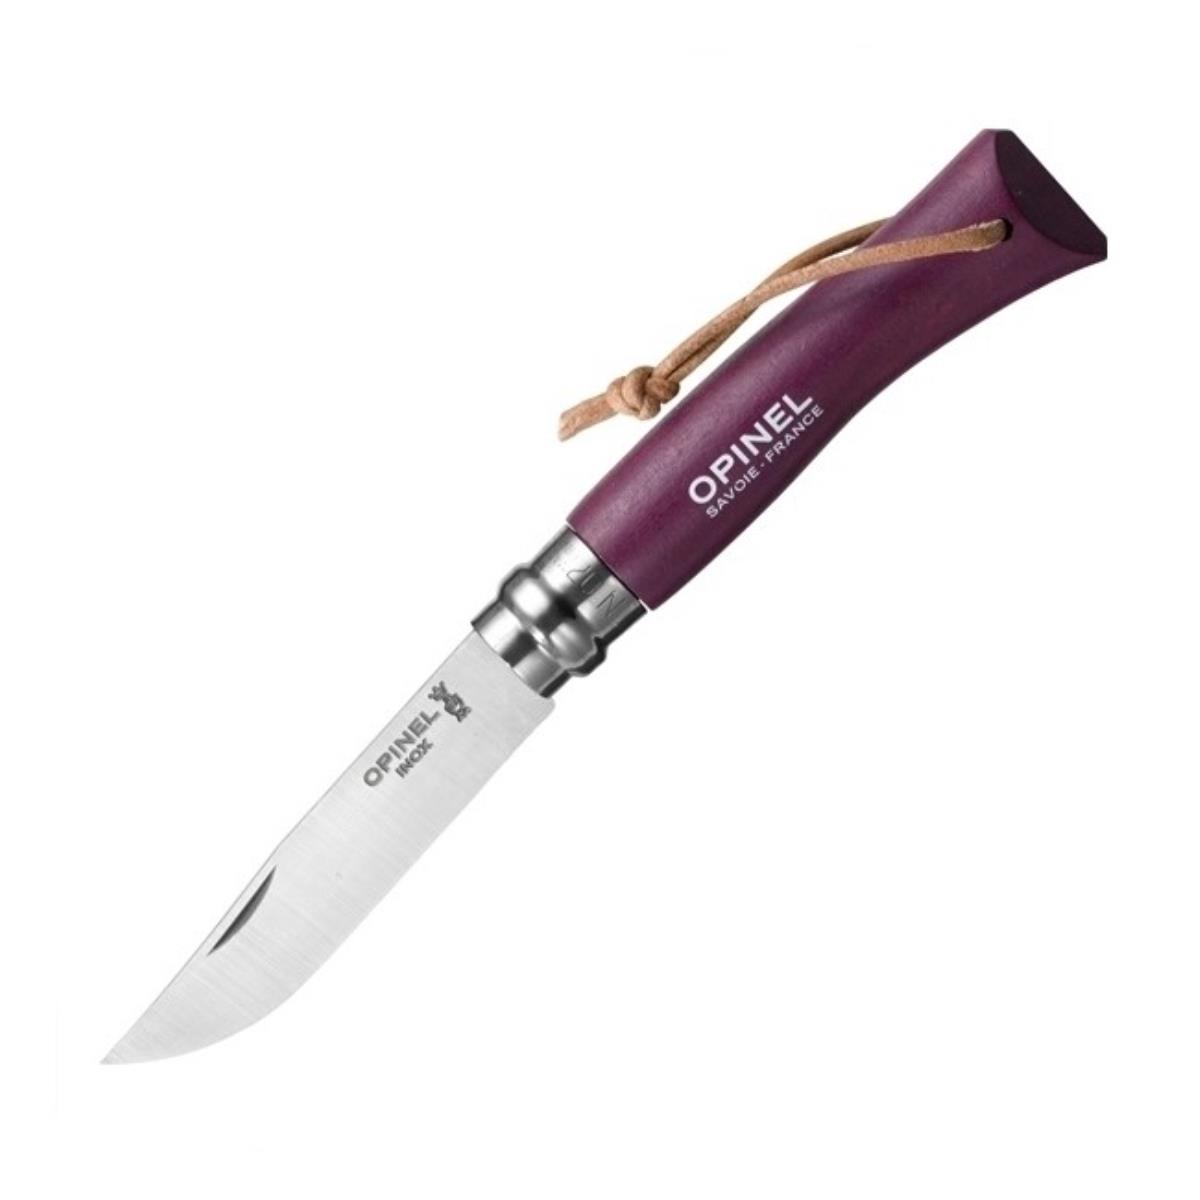 Нож №7 VRI Colored Tradition нерж. сталь, рукоять граб,  клинок 8см, темляк (слива) OPINEL нож складной щука литой булат баранова граб